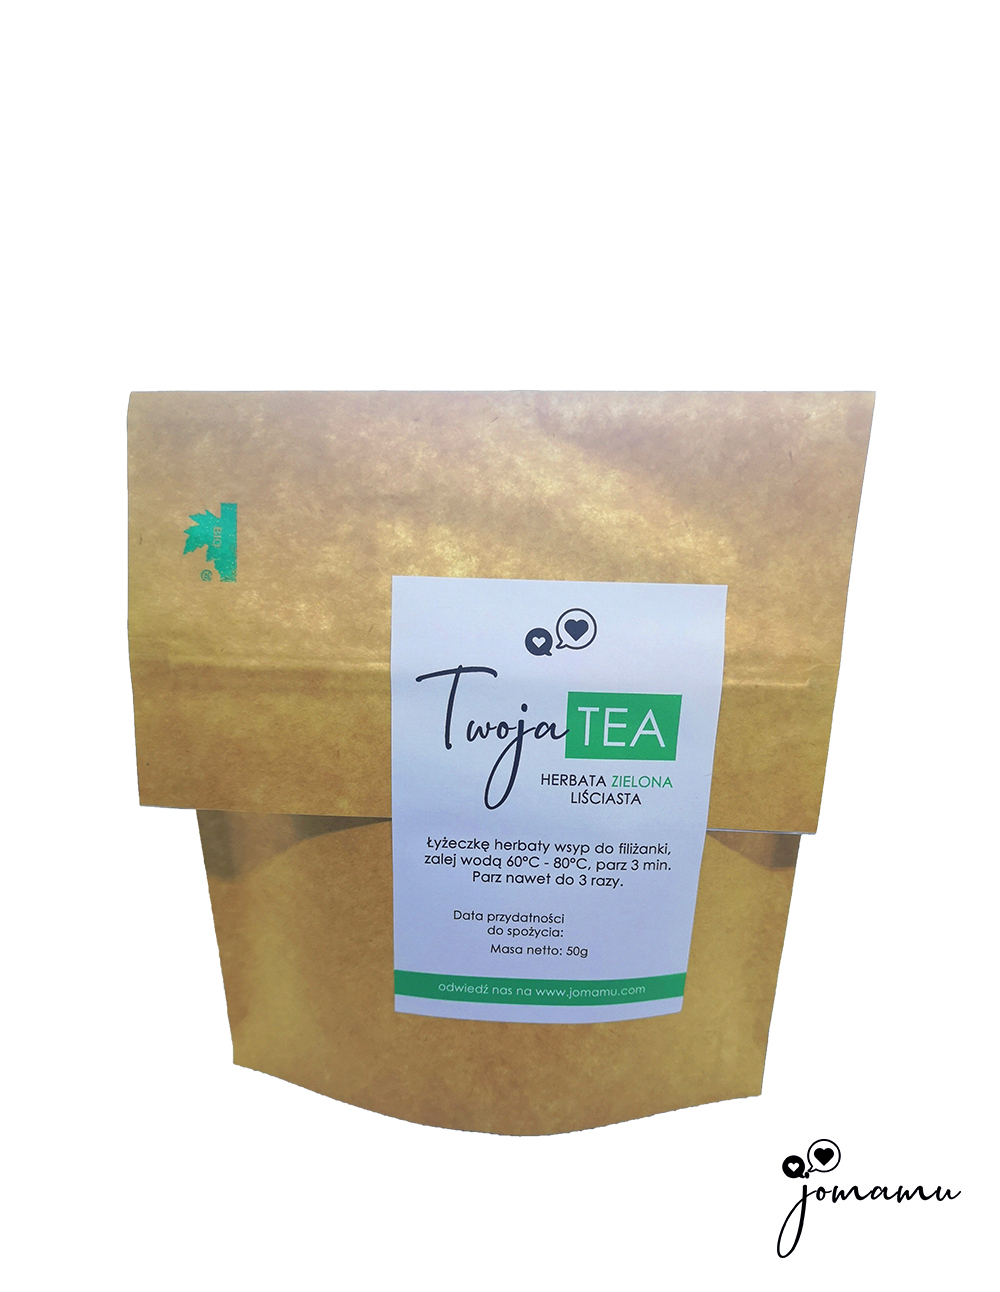 Twoja tea - zielona herbata liściasta od jomamu w Bio degradowalnym opakowaniu